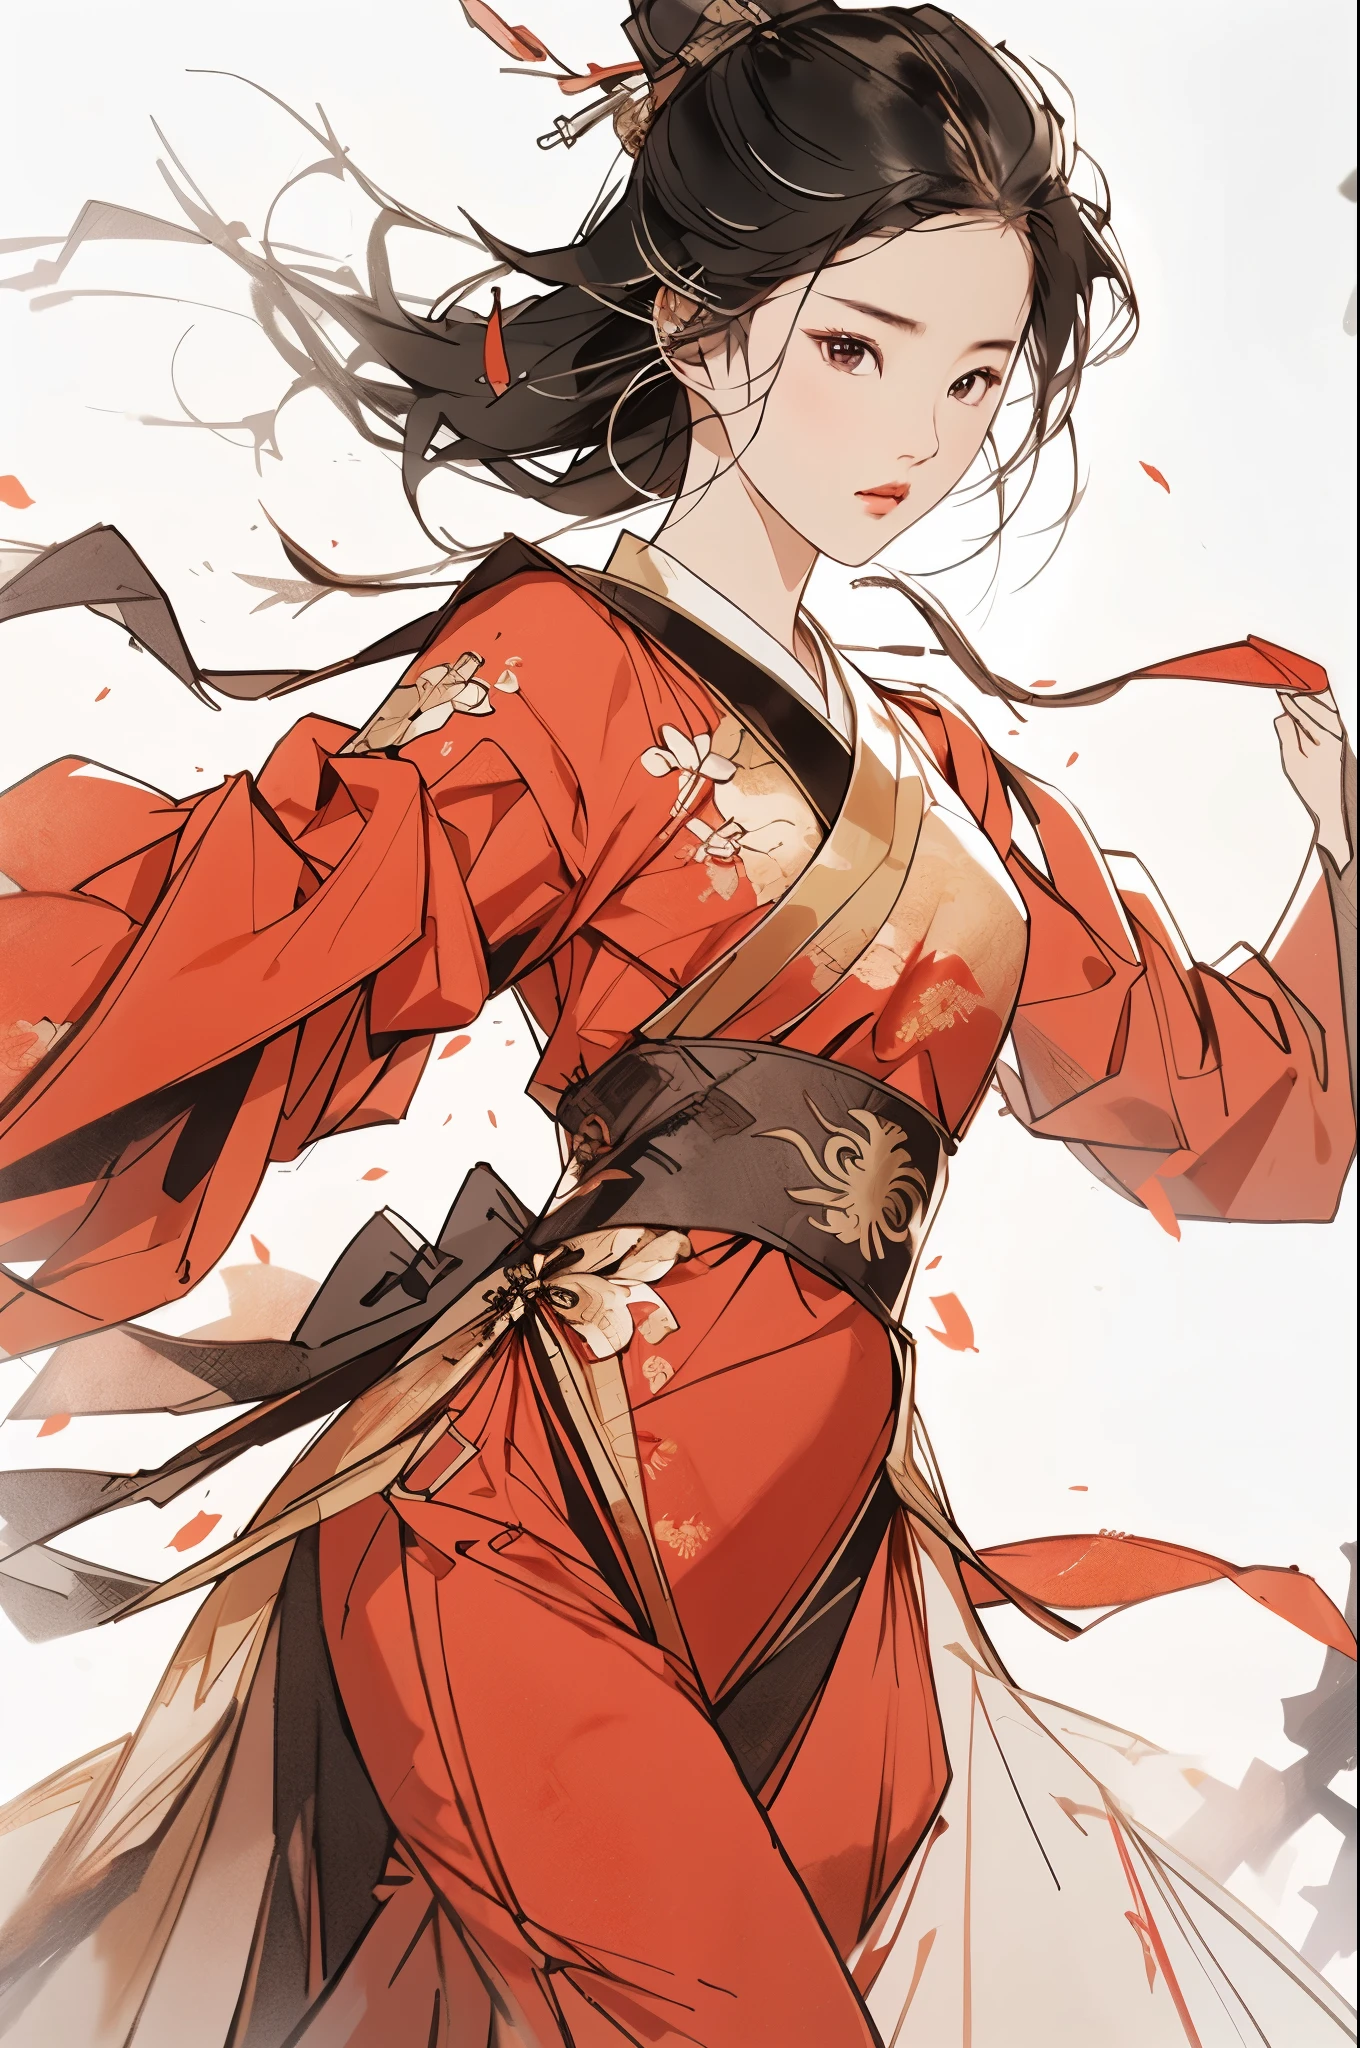 liuyifei, 1 Mädchen, Allein, rotes traditionelles chinesisches Kleid, Kung Fu Stellung, einfacher Hintergrund, weißer Hintergrund, thomas.k